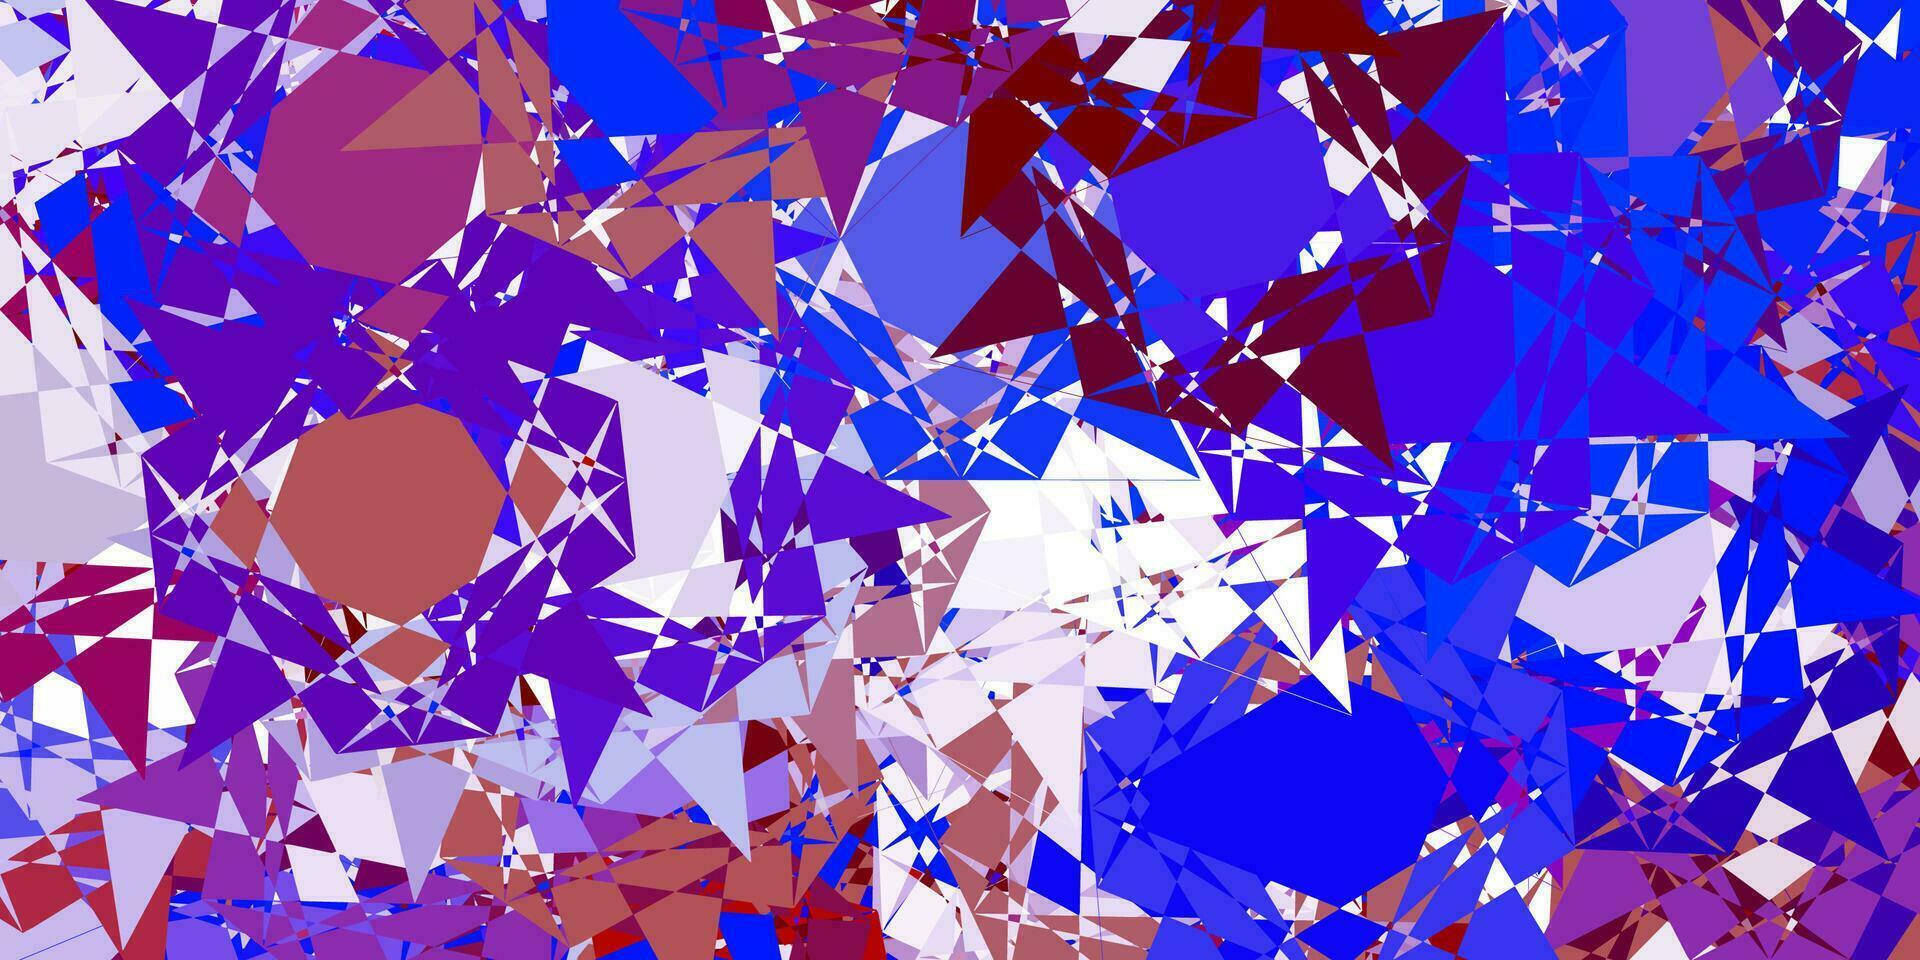 Fondo de vector azul claro, rojo con formas poligonales.